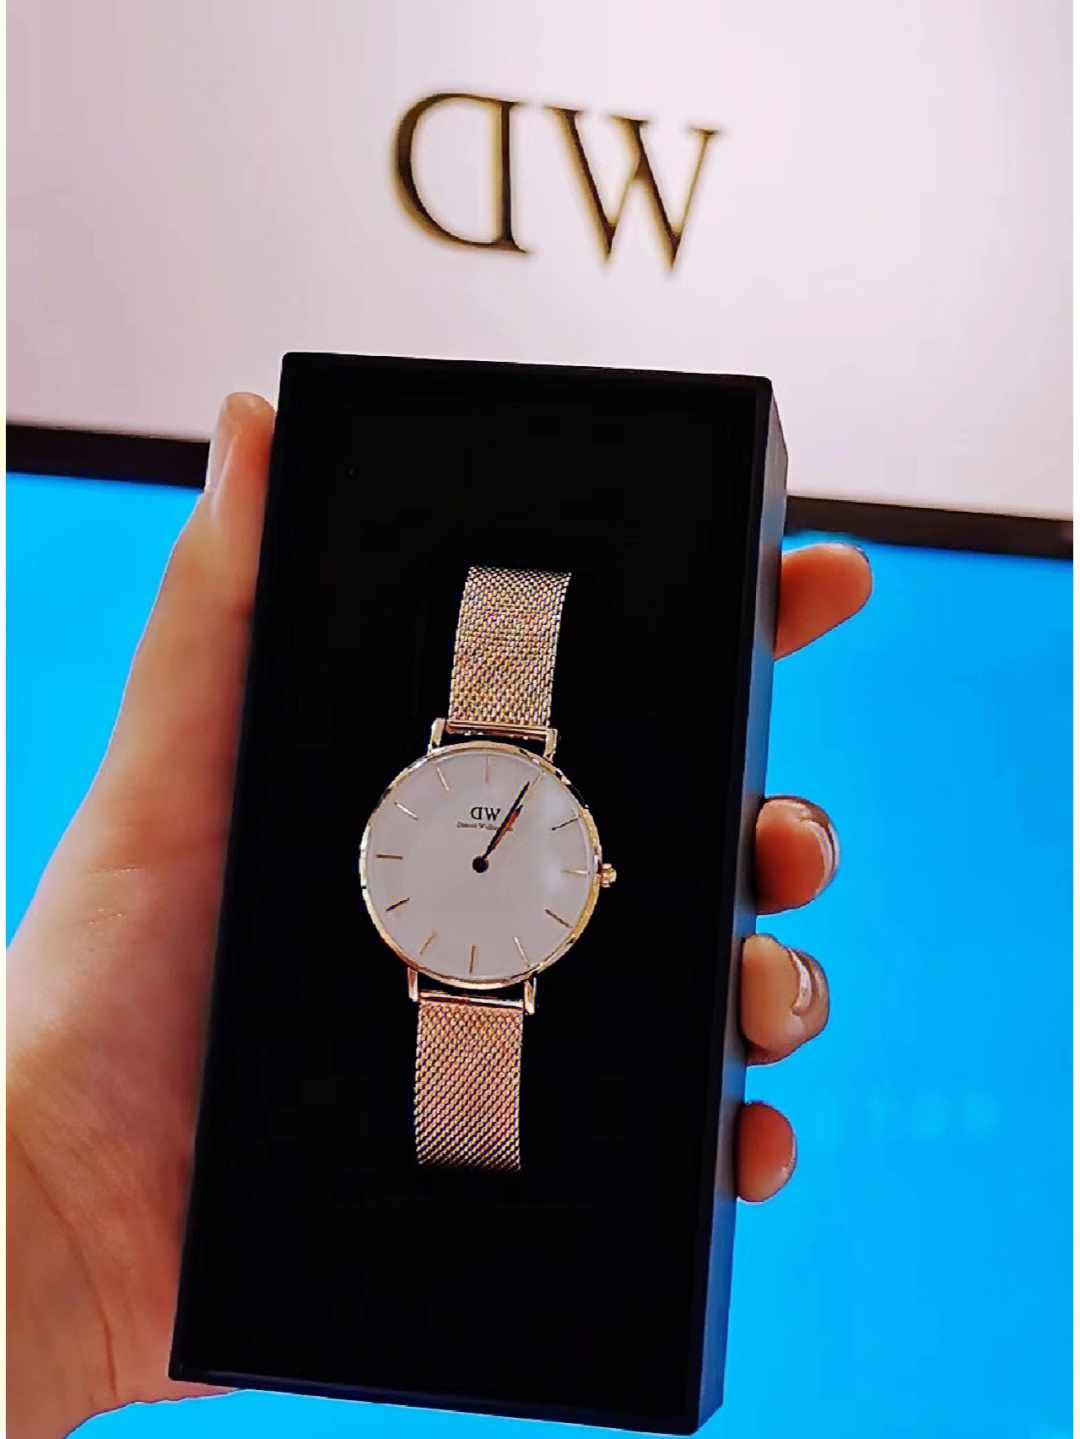 dw手表广告语图片